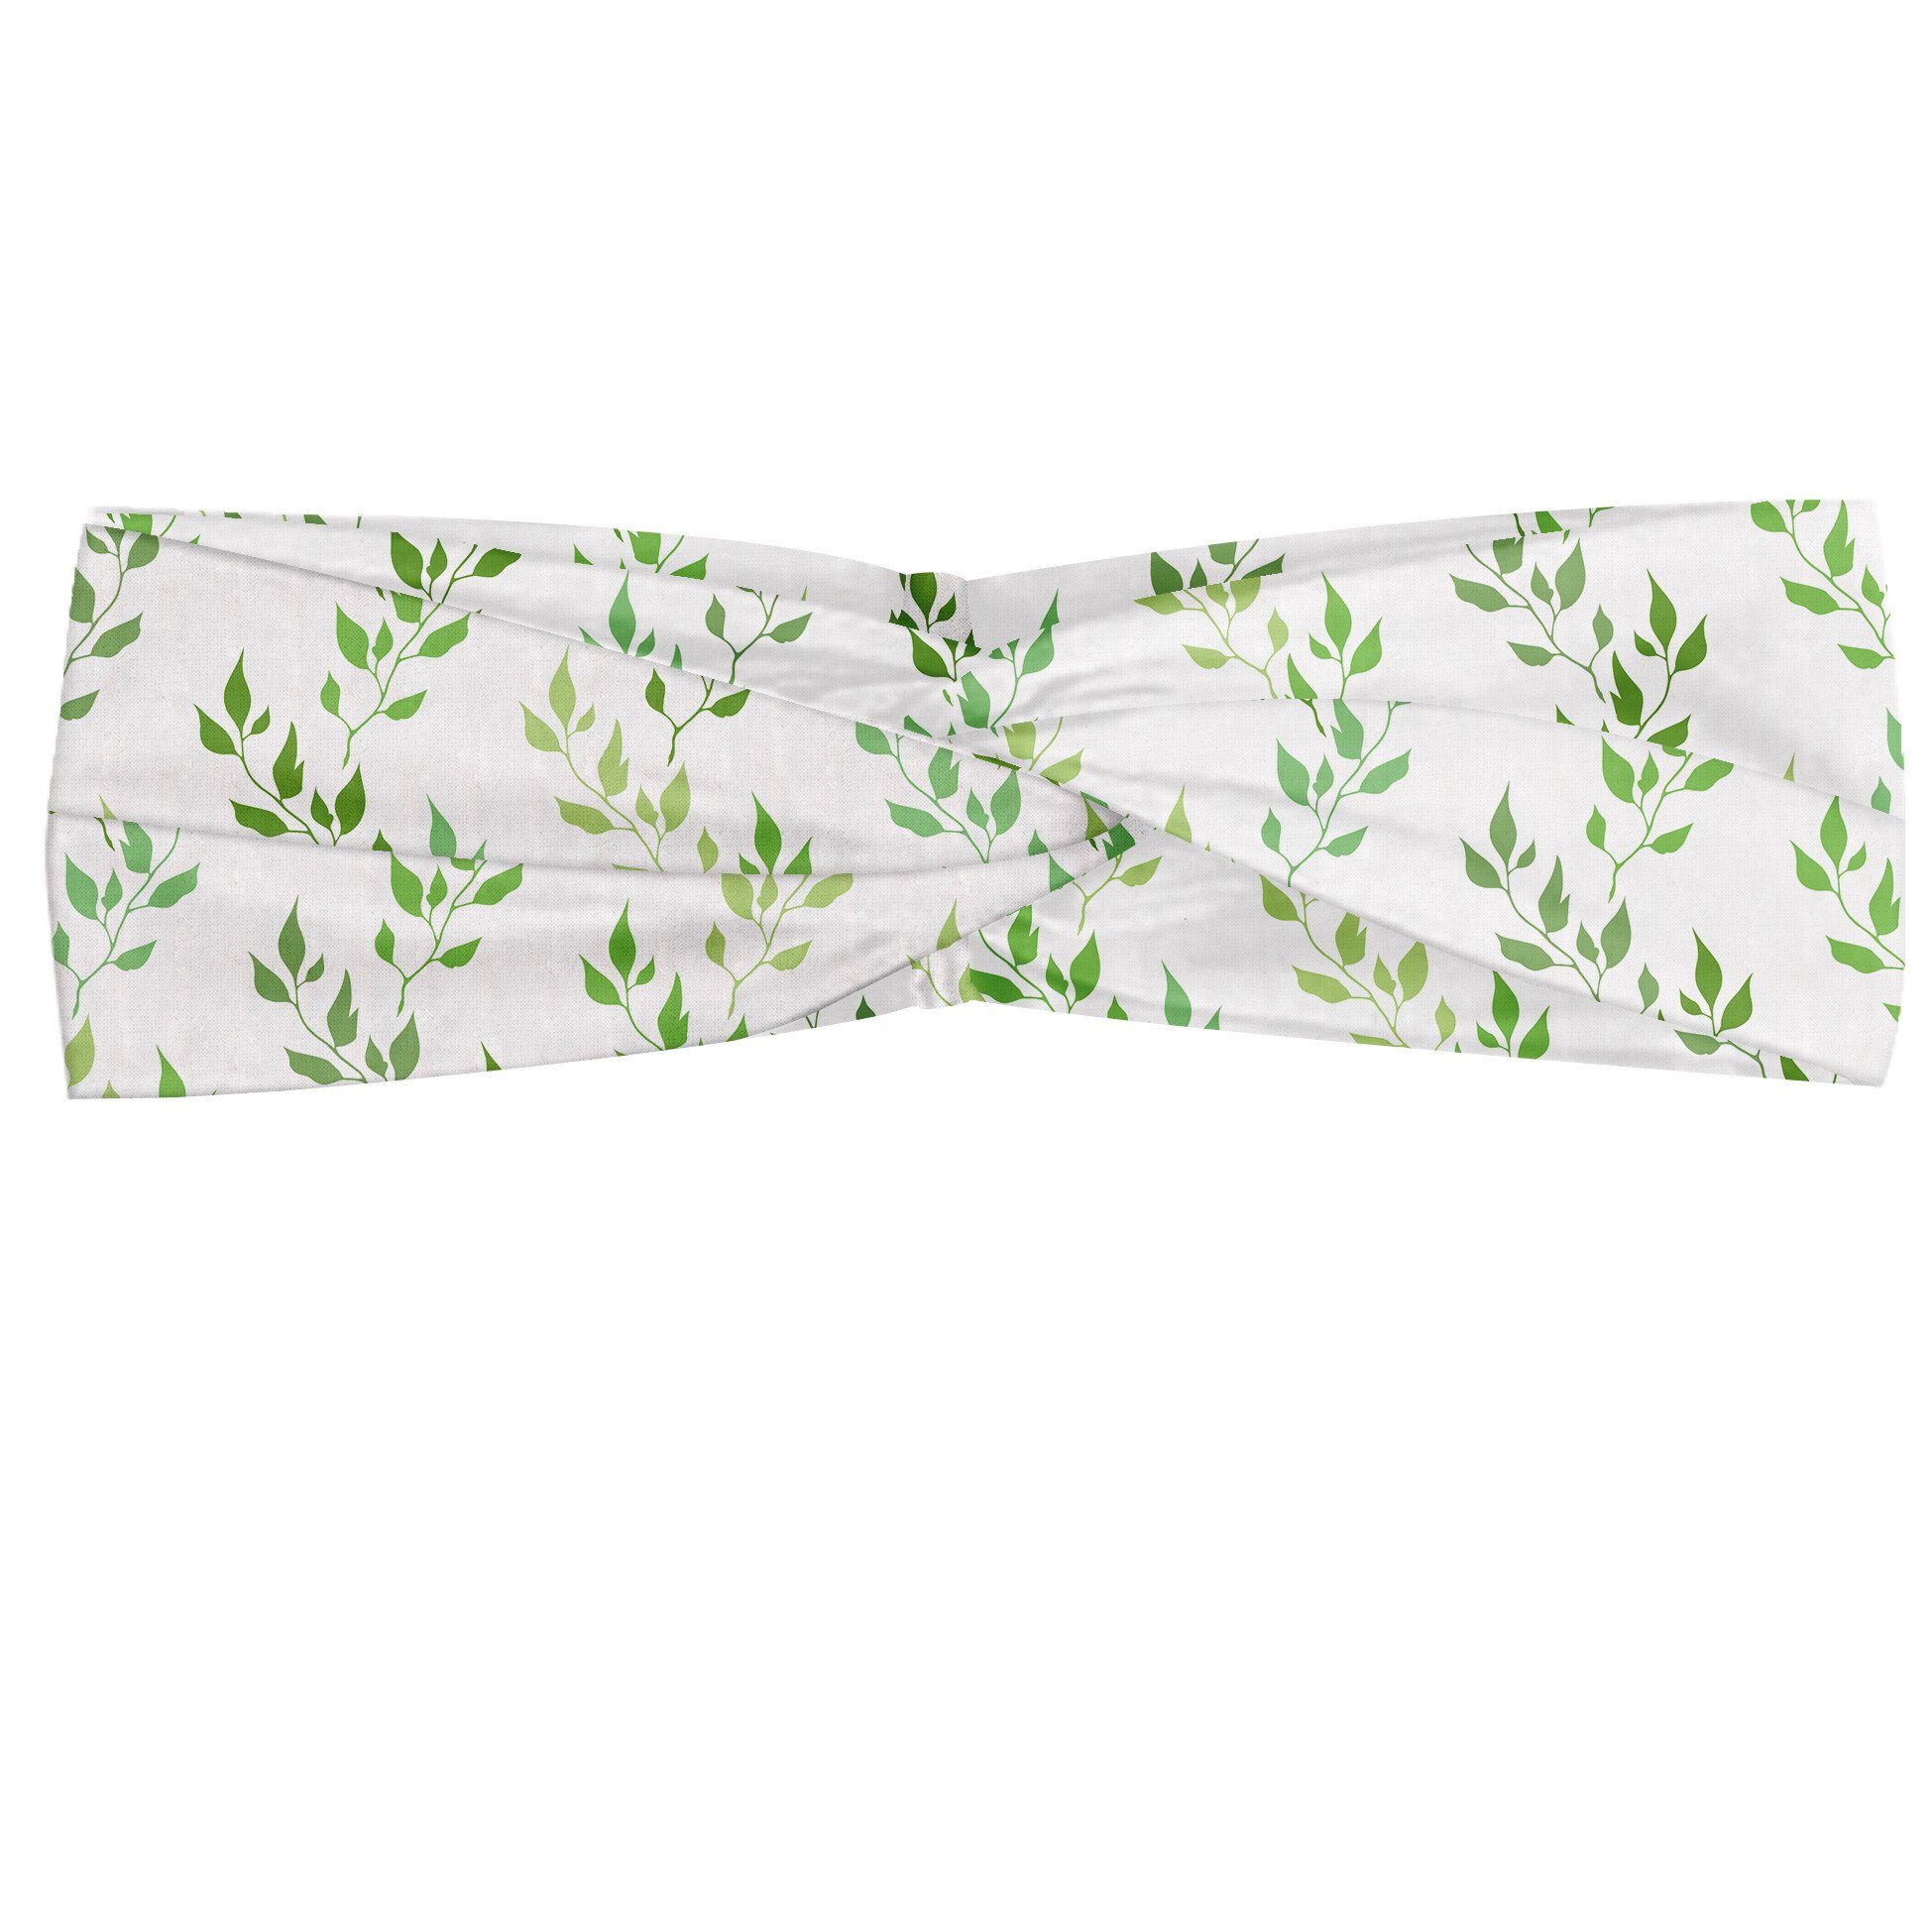 Abakuhaus Stirnband Elastisch und Angenehme Olive Symmetrische Grün Leaves alltags accessories